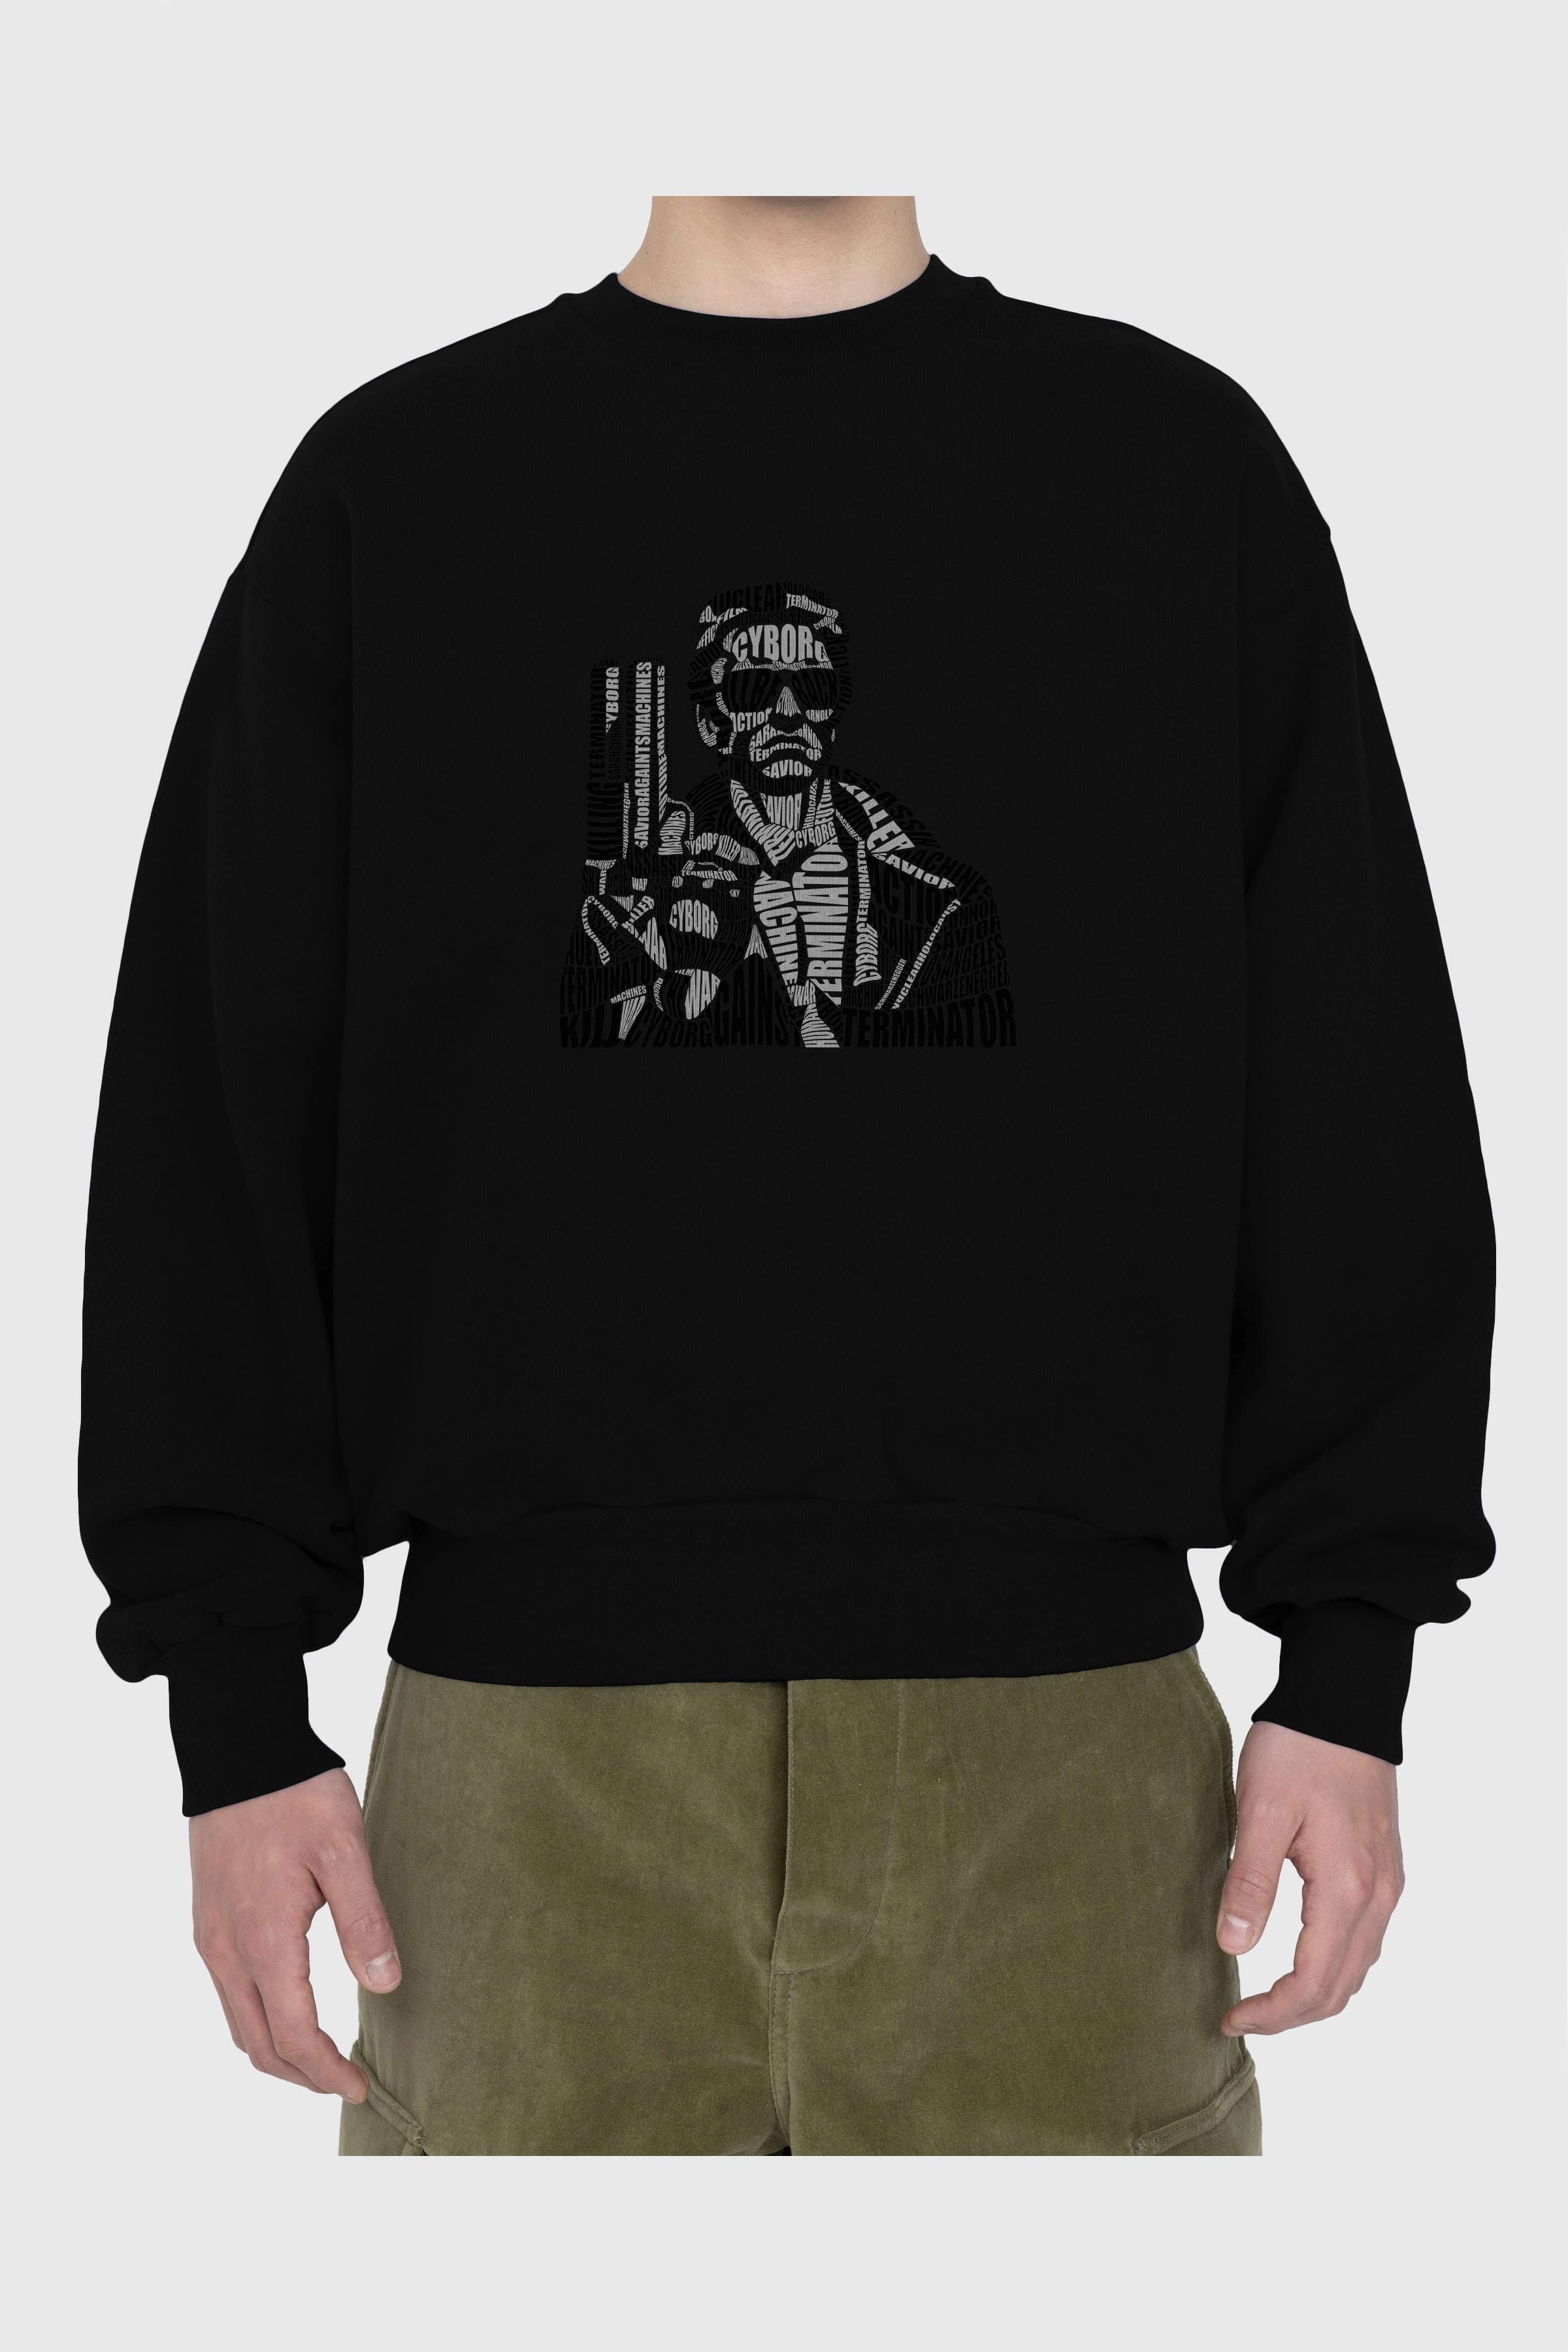 Terminator Calligram Ön Baskılı Oversize Sweatshirt Erkek Kadın Unisex